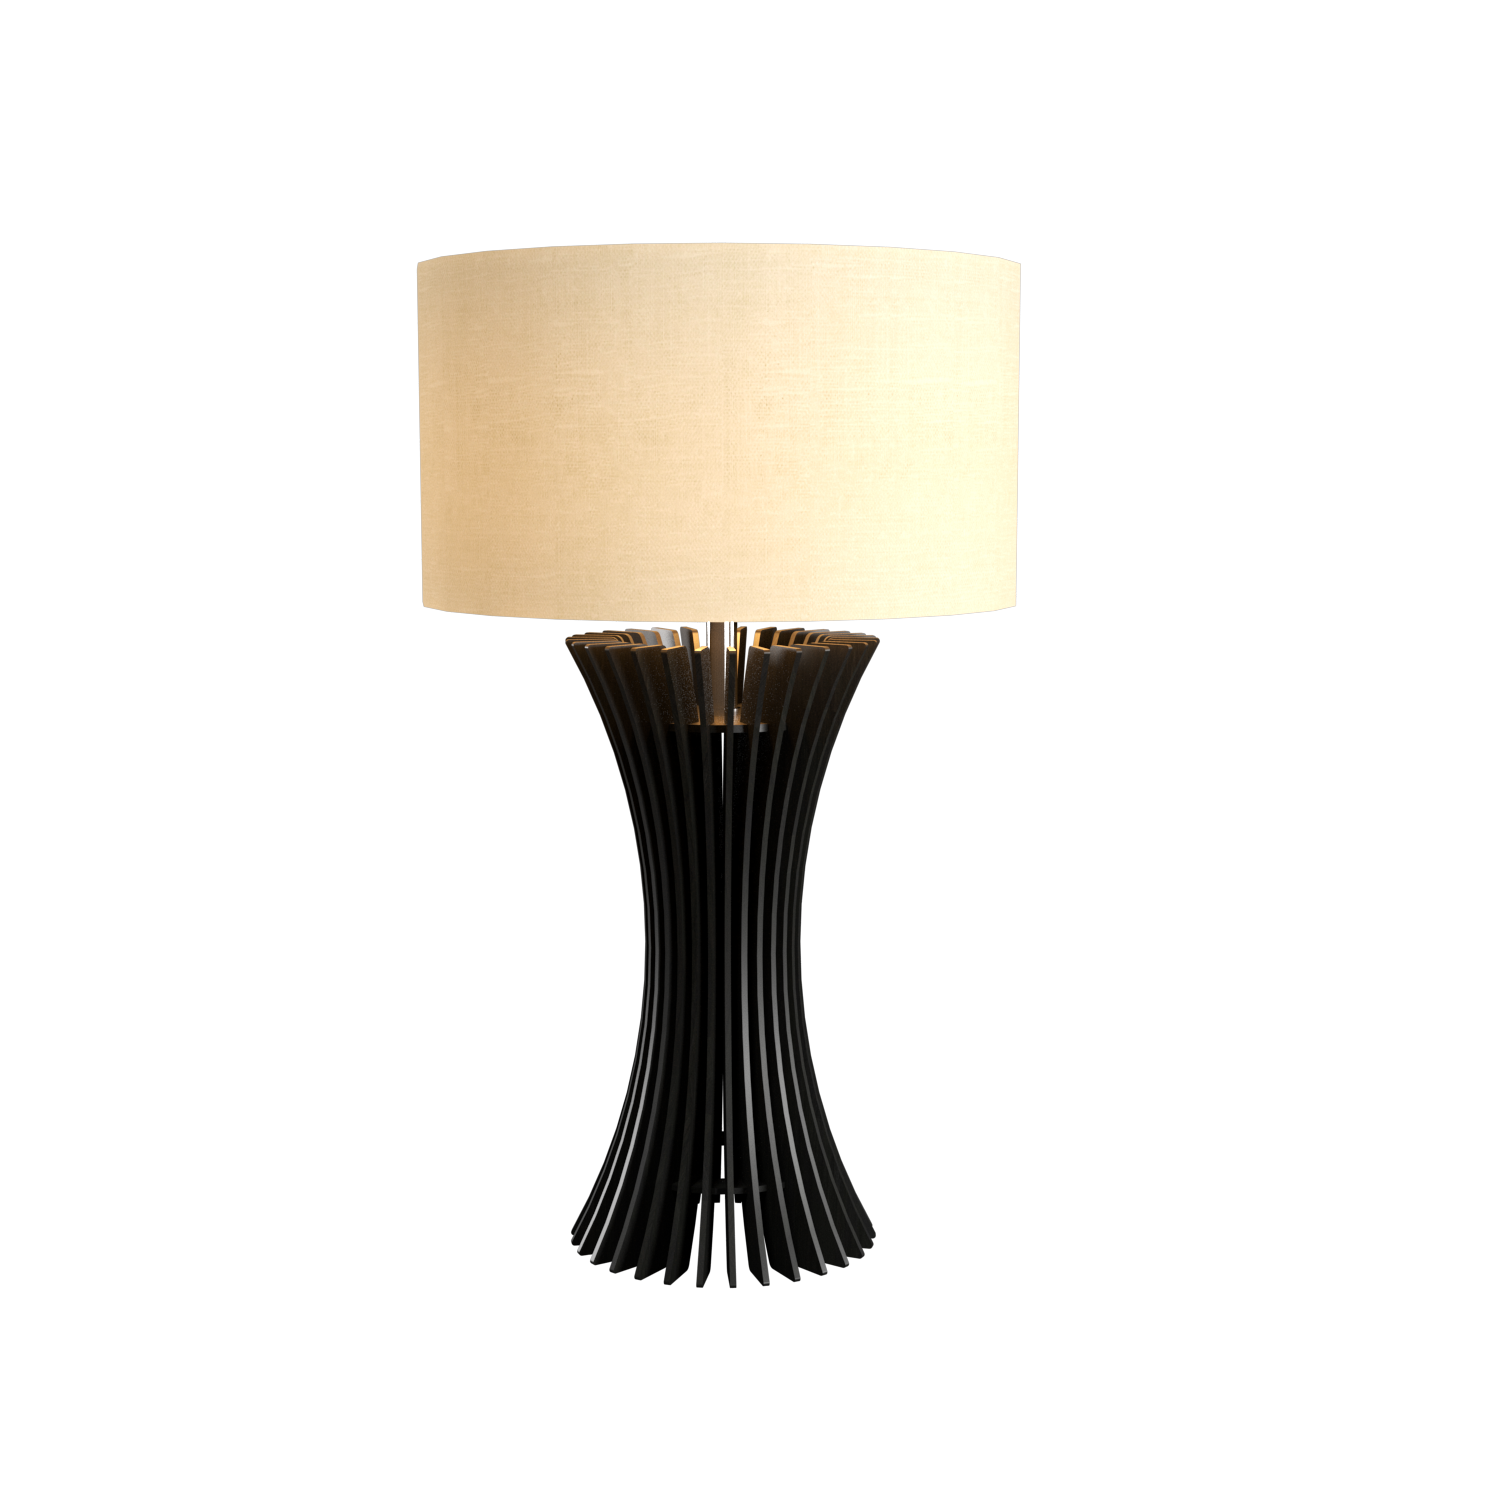 Table Lamp Accord Stecche Di Legno 7013 - Stecche Di Legno Line Accord Lighting | 44. Charcoal